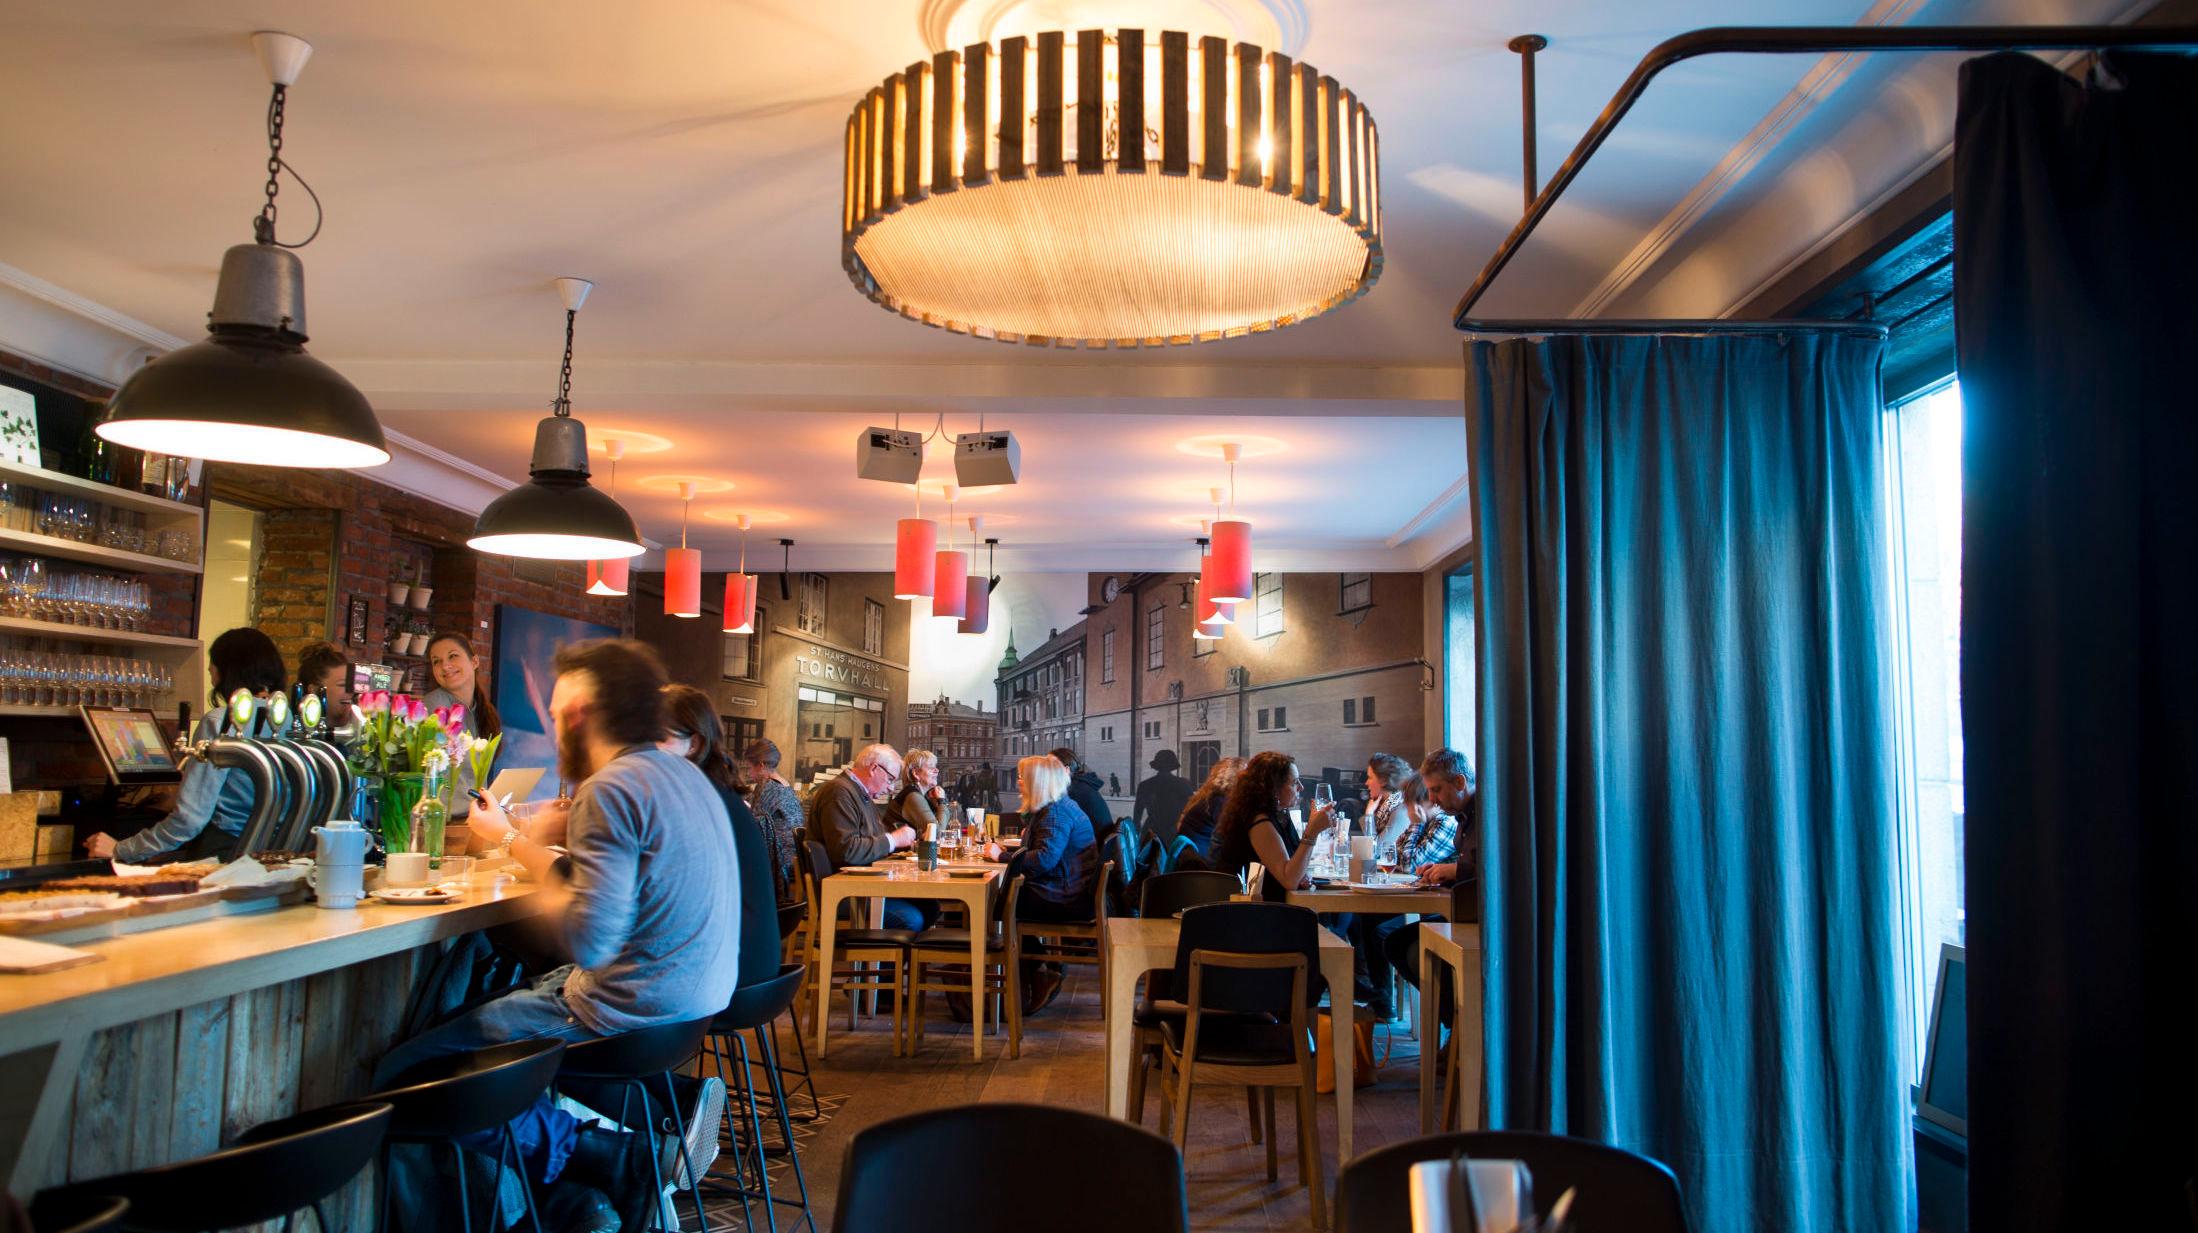 LOKAL FAVORITT: Nabolagsstedet Smalhans er en av Lavas  Oslos restauranter. Dette bildet er tatt i forbindelse med en tidligere matanmeldelse. Foto: Fredrik Solstad/VG.